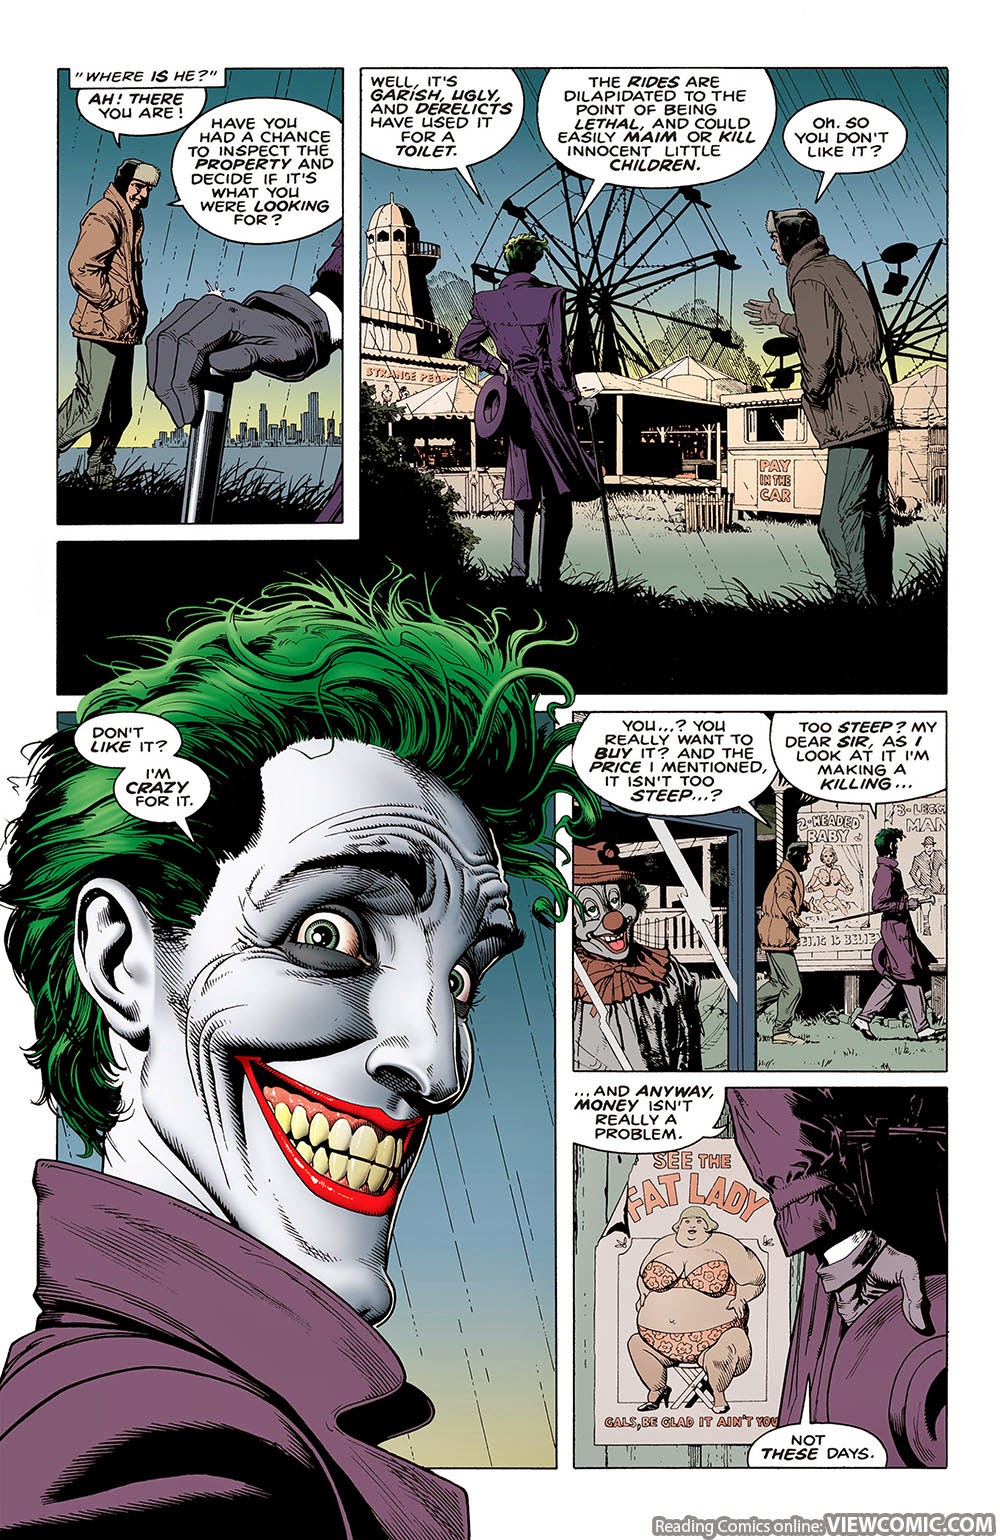 1000px x 1540px - Batman The Killing Joke (1988)â€¦â€¦â€¦â€¦â€¦â€¦ | Viewcomic reading ...